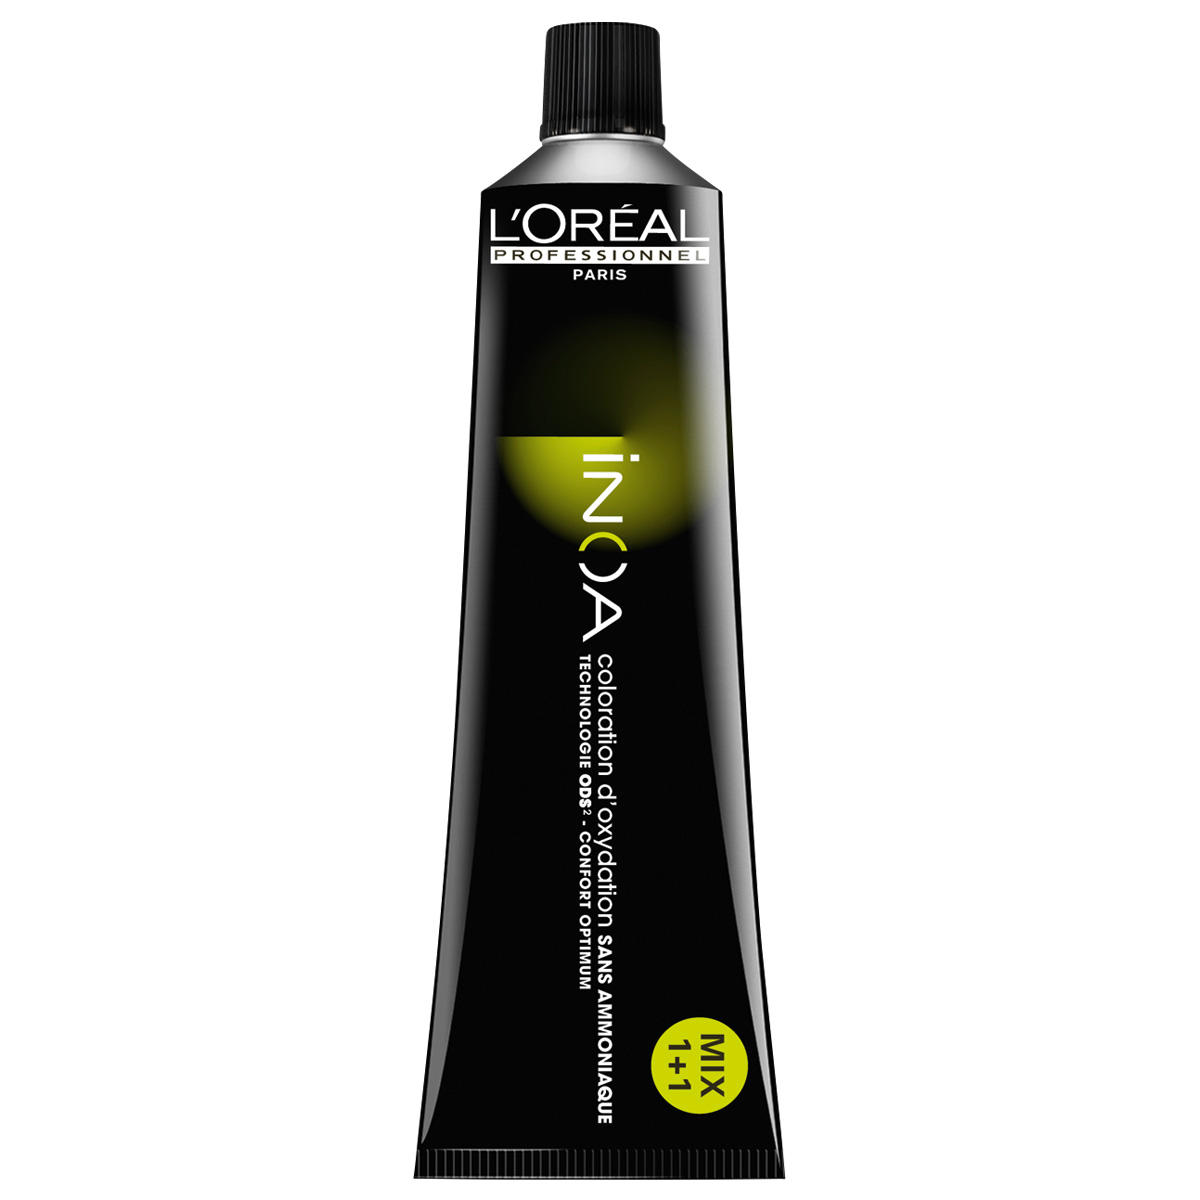 L'Oréal Professionnel Paris Coloration 7.13 Medium Blond Asgoud, Tube 60 ml - 1